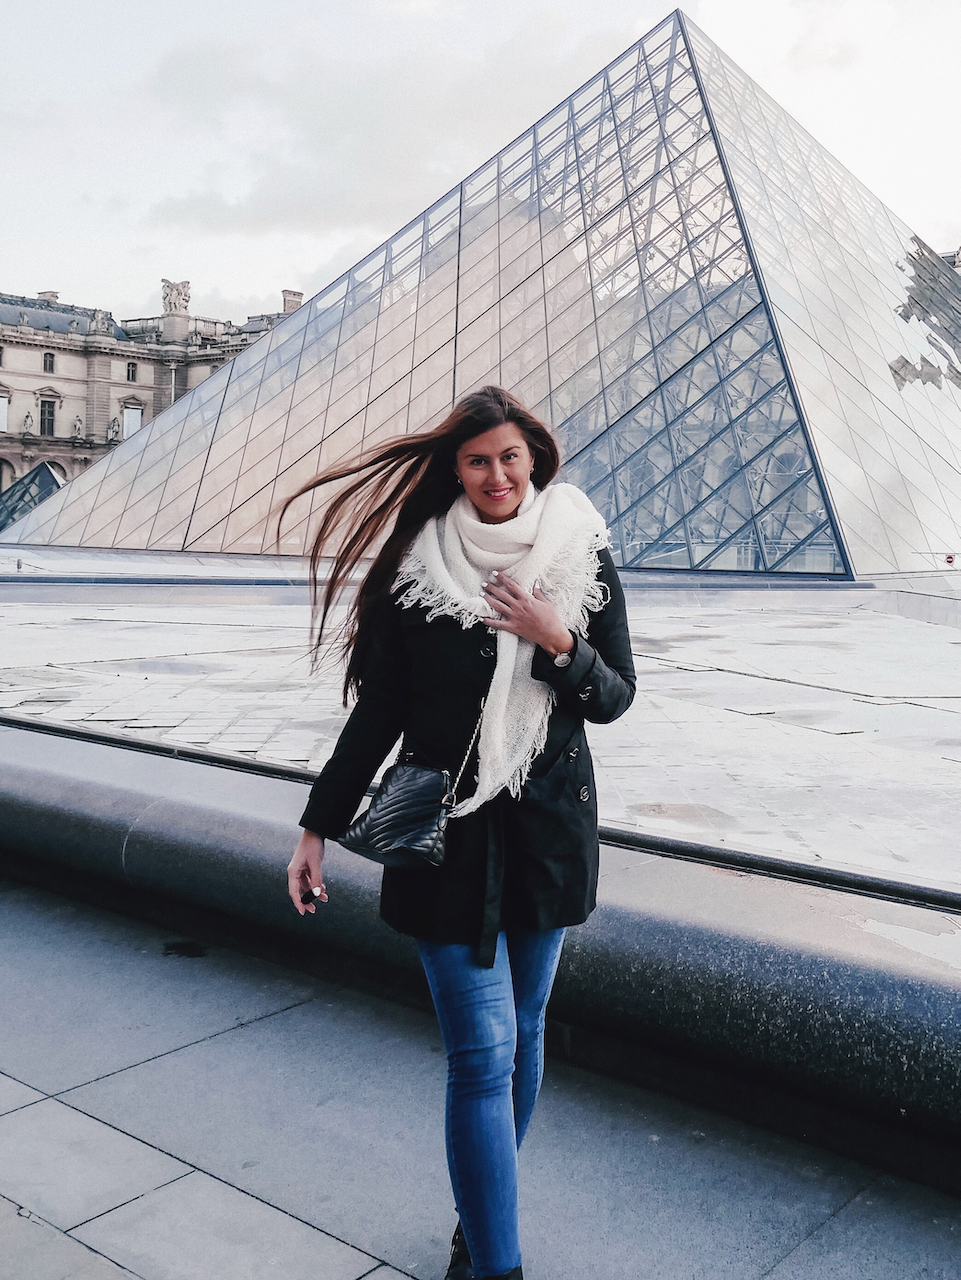 Pyramide du Louvre - Paris - France